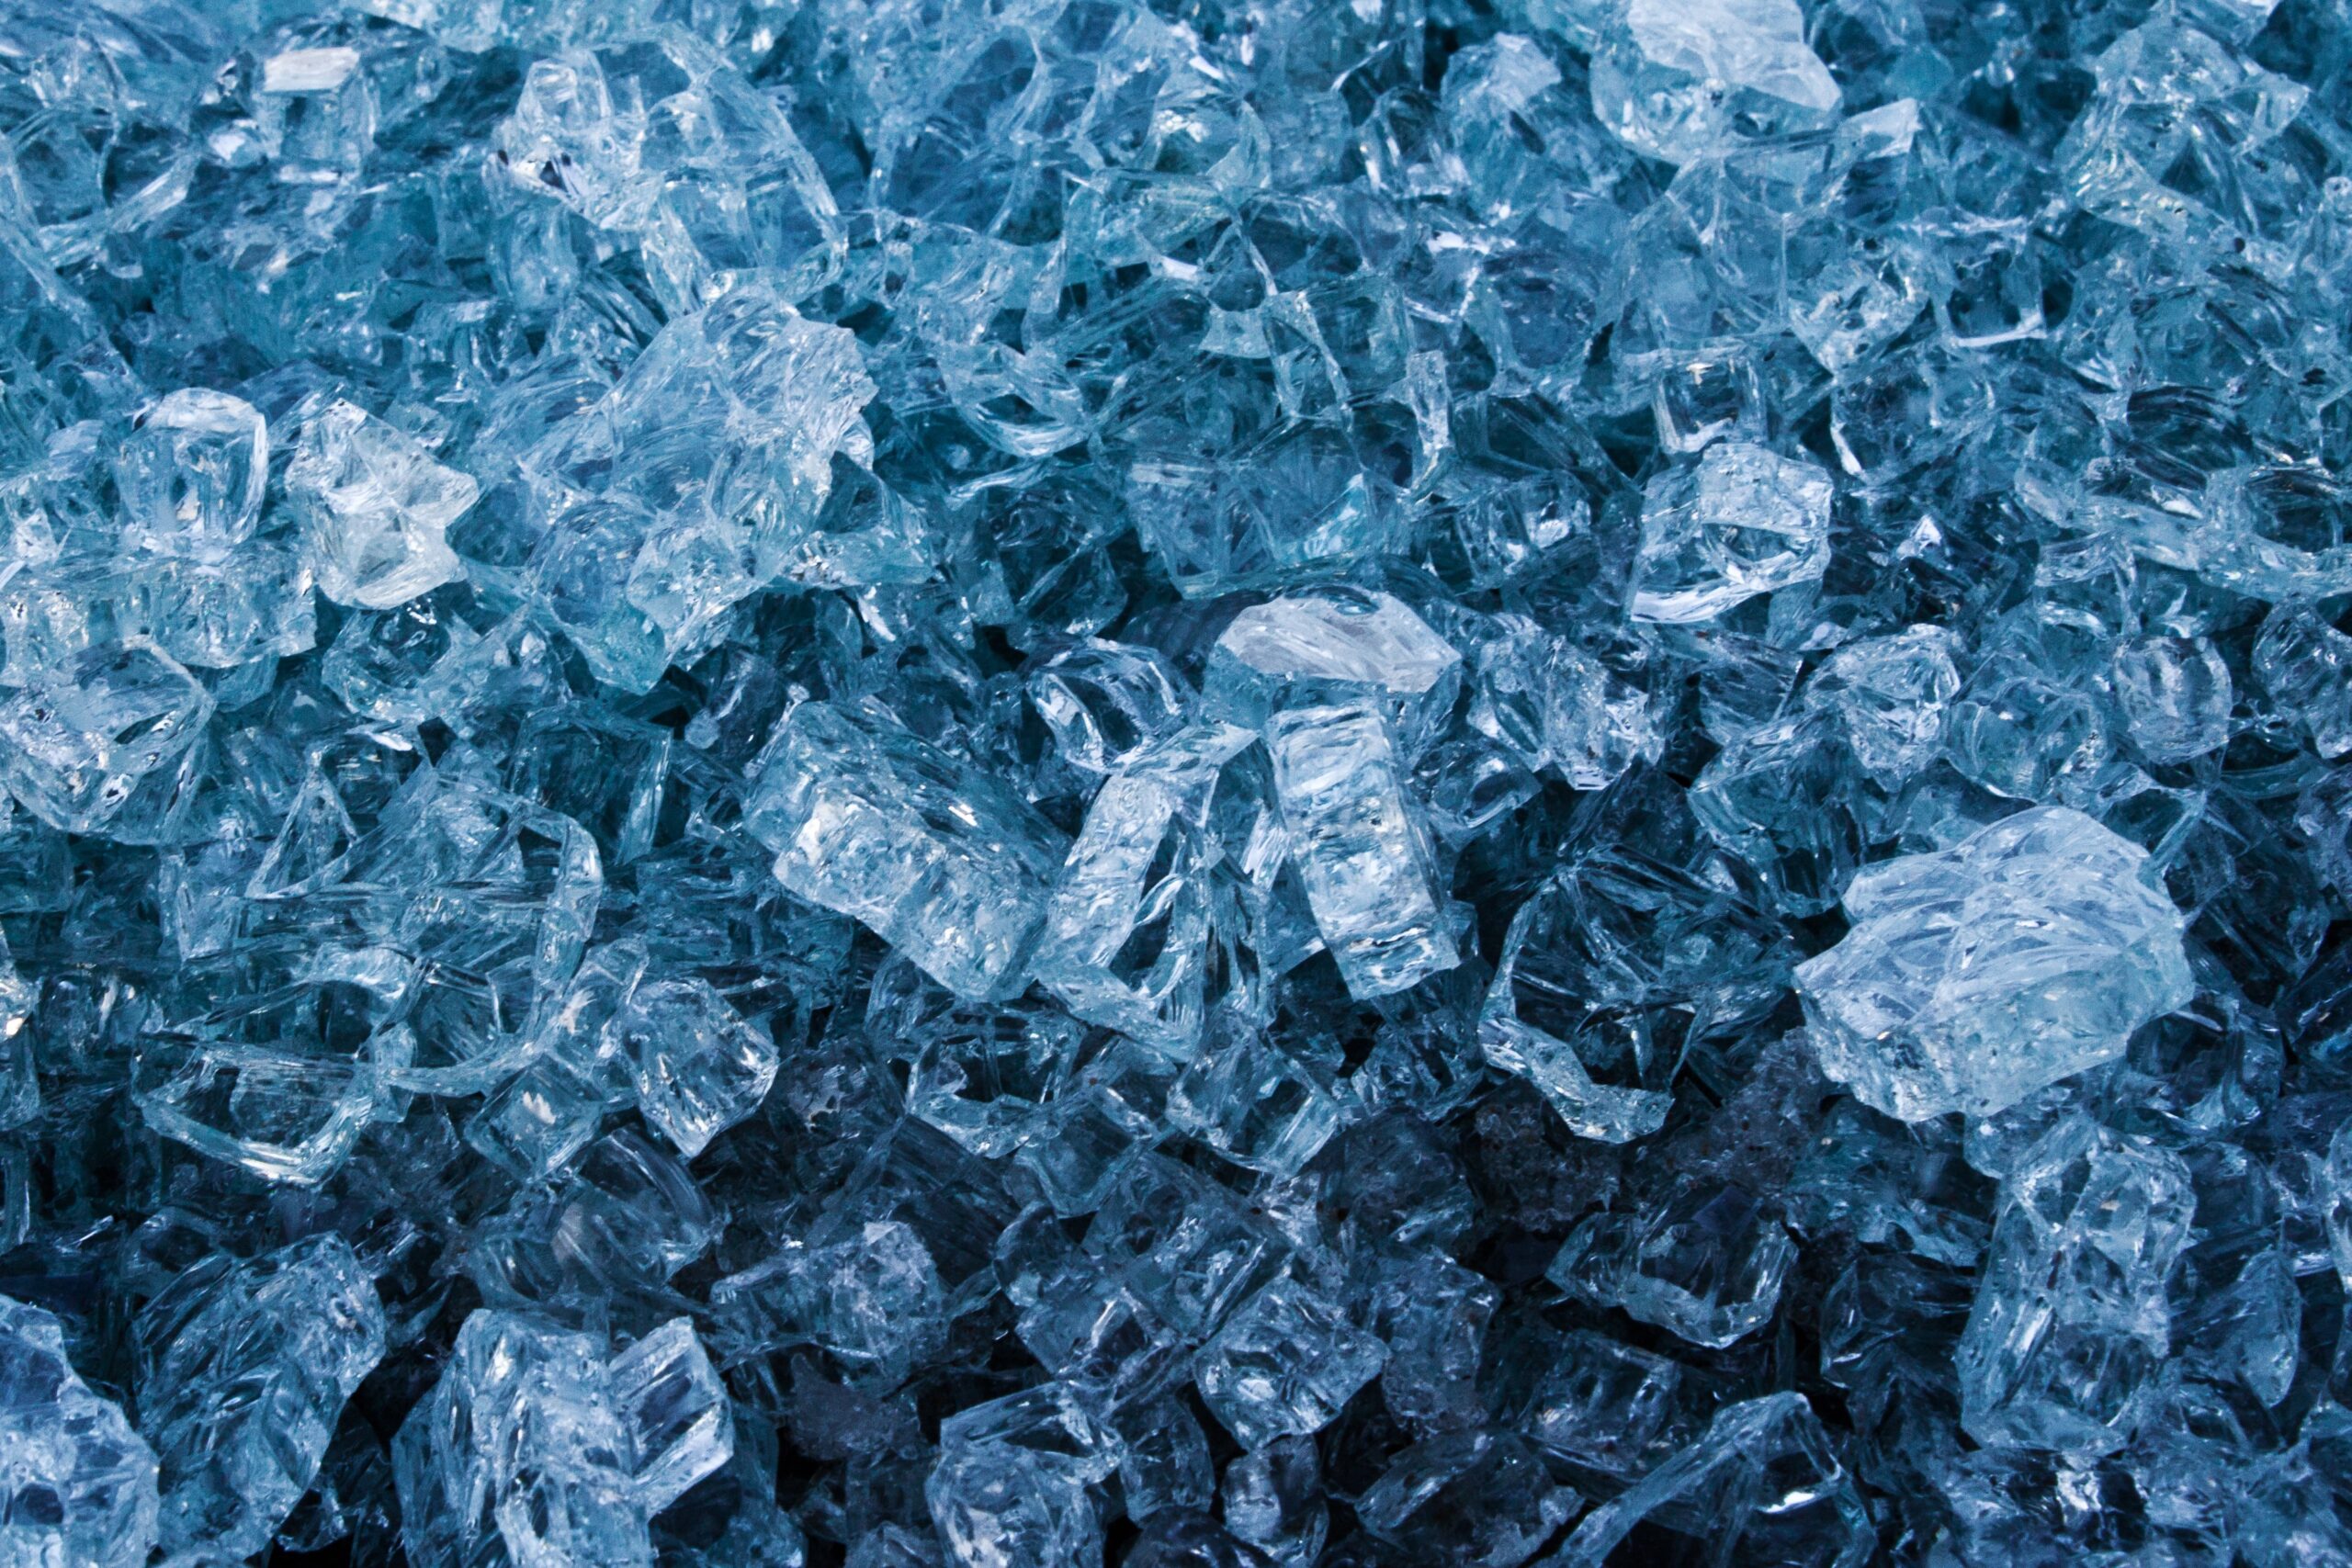 Aquamarine types of crystals